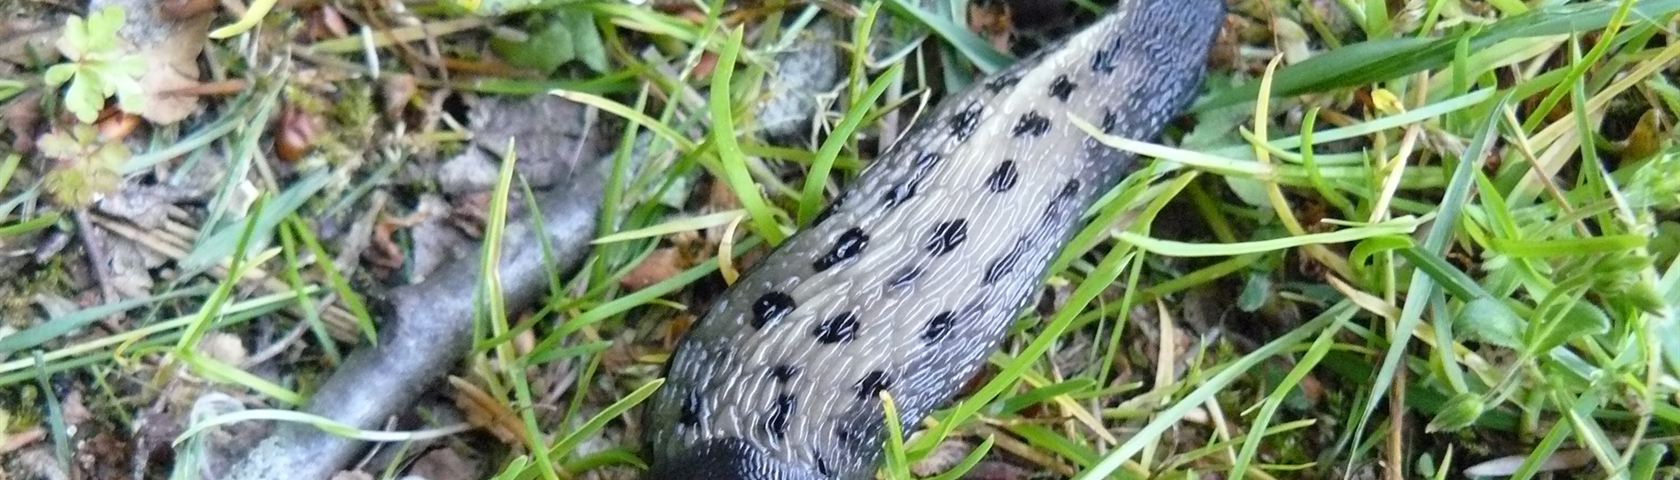 Beautiful Slug